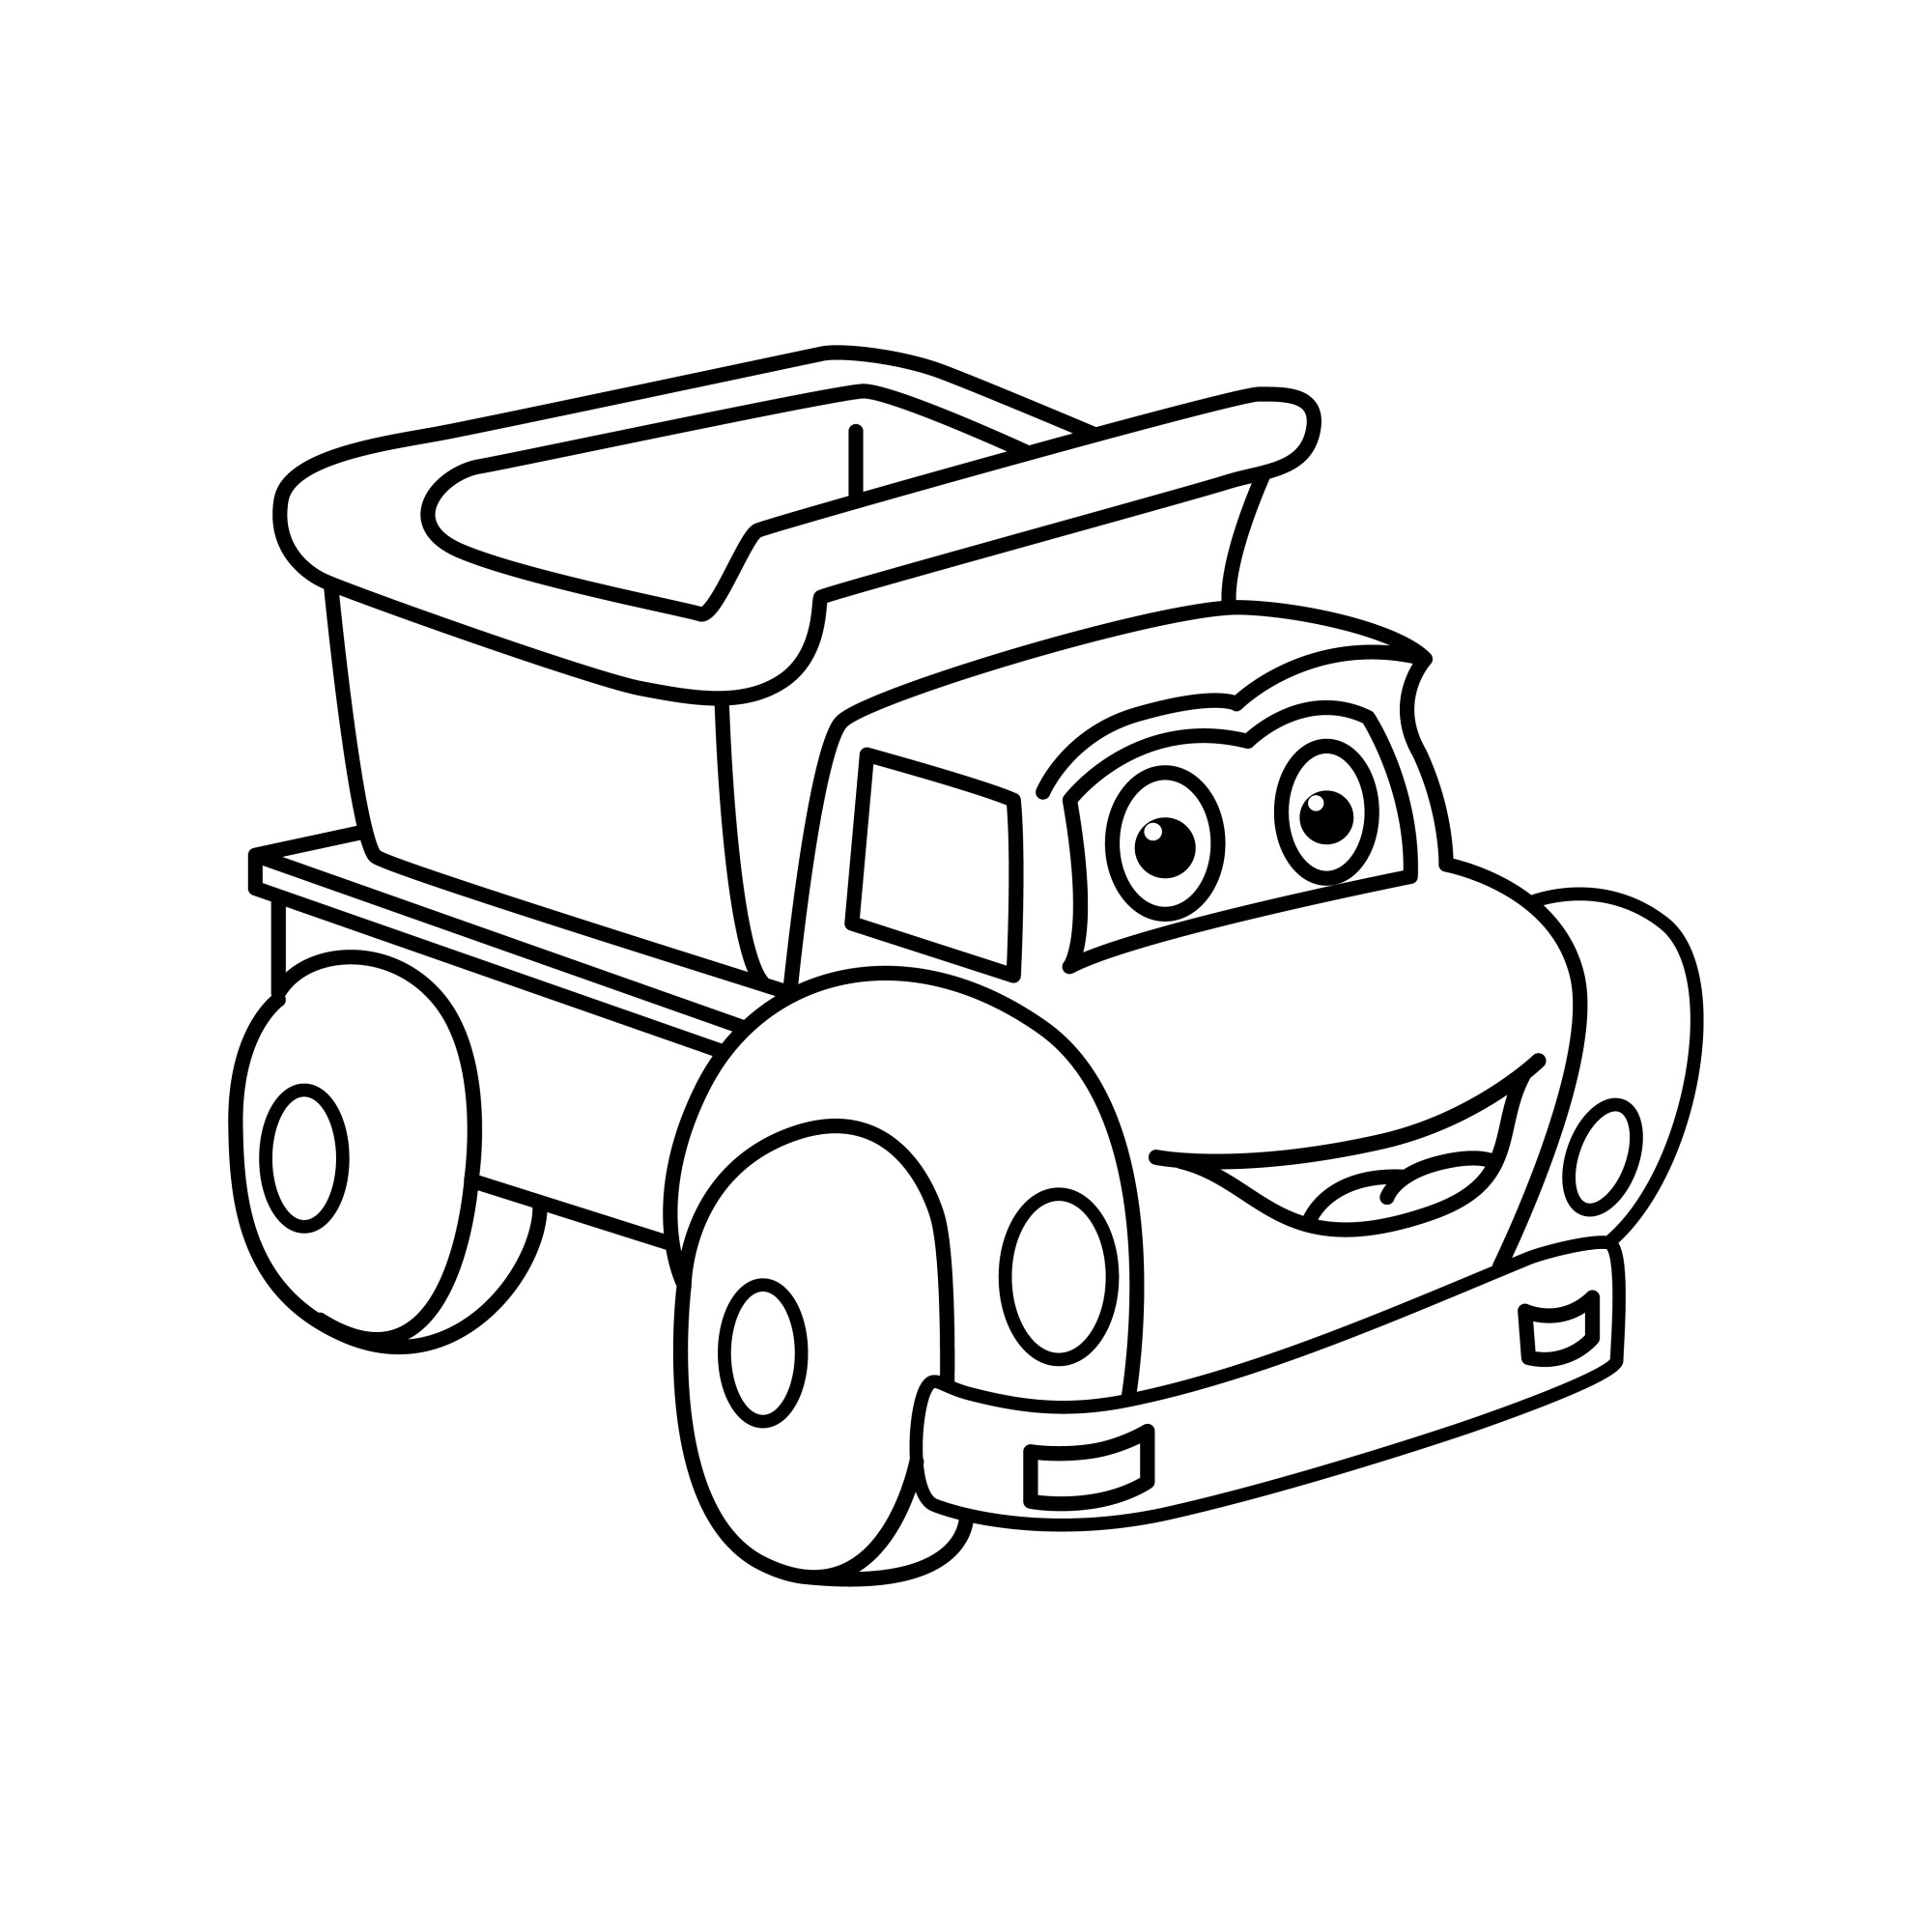 Раскраска для детей: игрушка грузовик с лицом